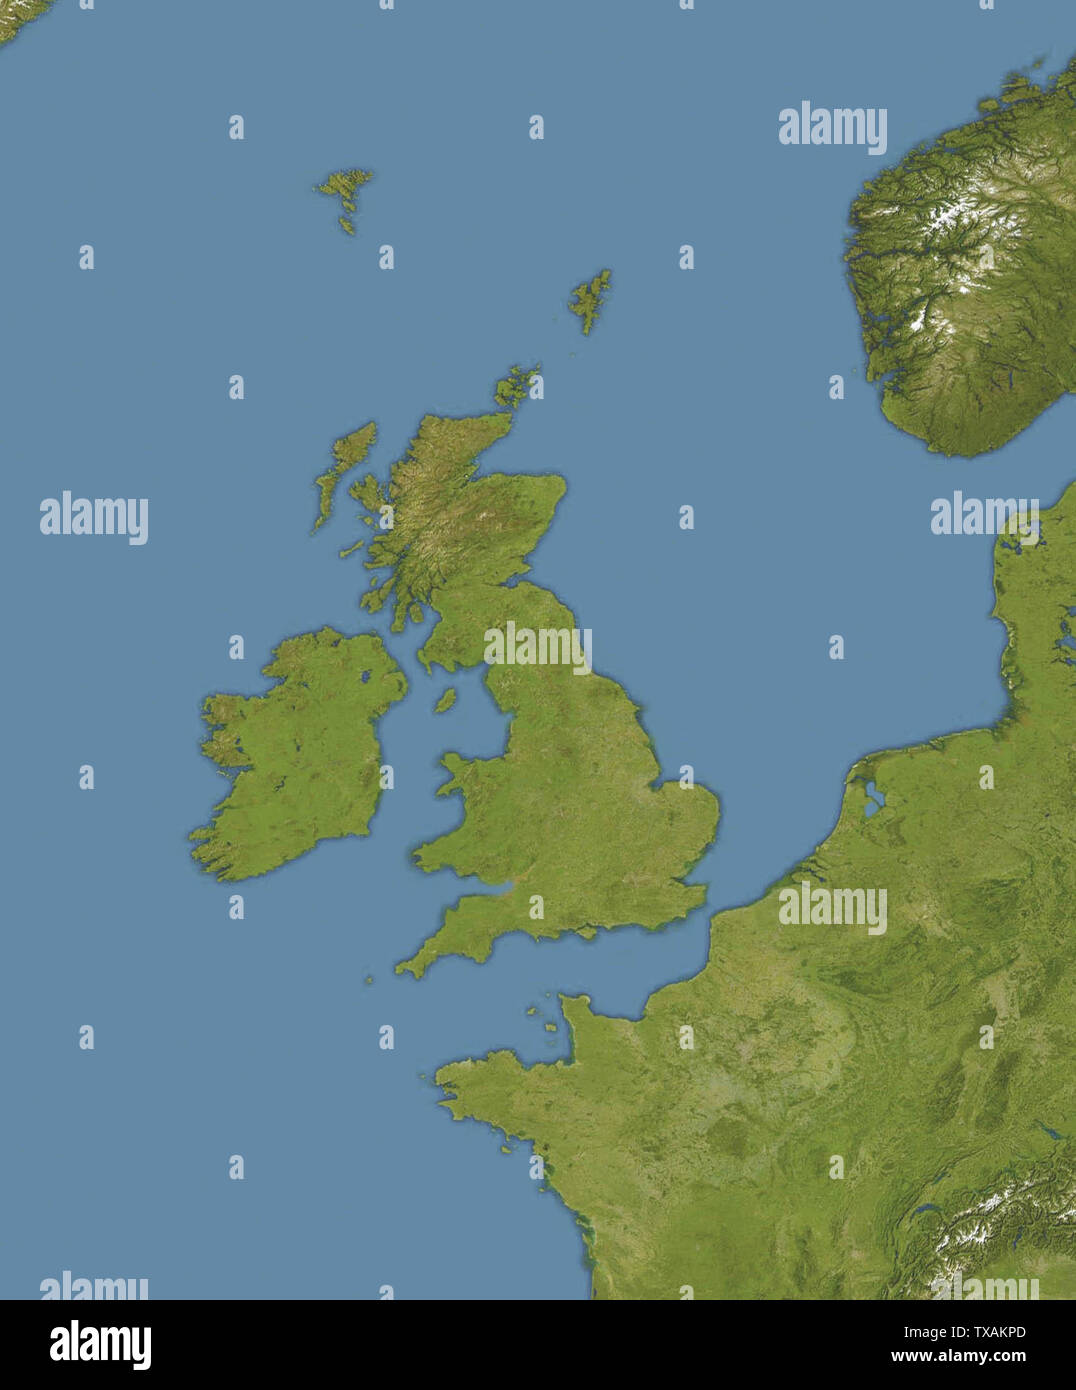 Mapa de ation de los océanos alrededor del Reino Unido e Irlanda proyección equirectangular, N/S que se extiende 150 %. Límites geográficos del mapa: N: 65º N S: 45º N W: 15º W E: 10º E; 19 de diciembre de 2008 (19 de diciembre de 2008 (fecha de carga original)); Transferido desde en.pedia (texto original : Obra propia, versión recortada de File:Europe Satellite Image ation map.jpg, que es una versión recortada y editada en color de File:Whole World - Land and Oceans 12000.jpg por NASA/Goddard Space Flight Center); Bellhalla. El cargador original era Bellhalla en en.pedia; Foto de stock